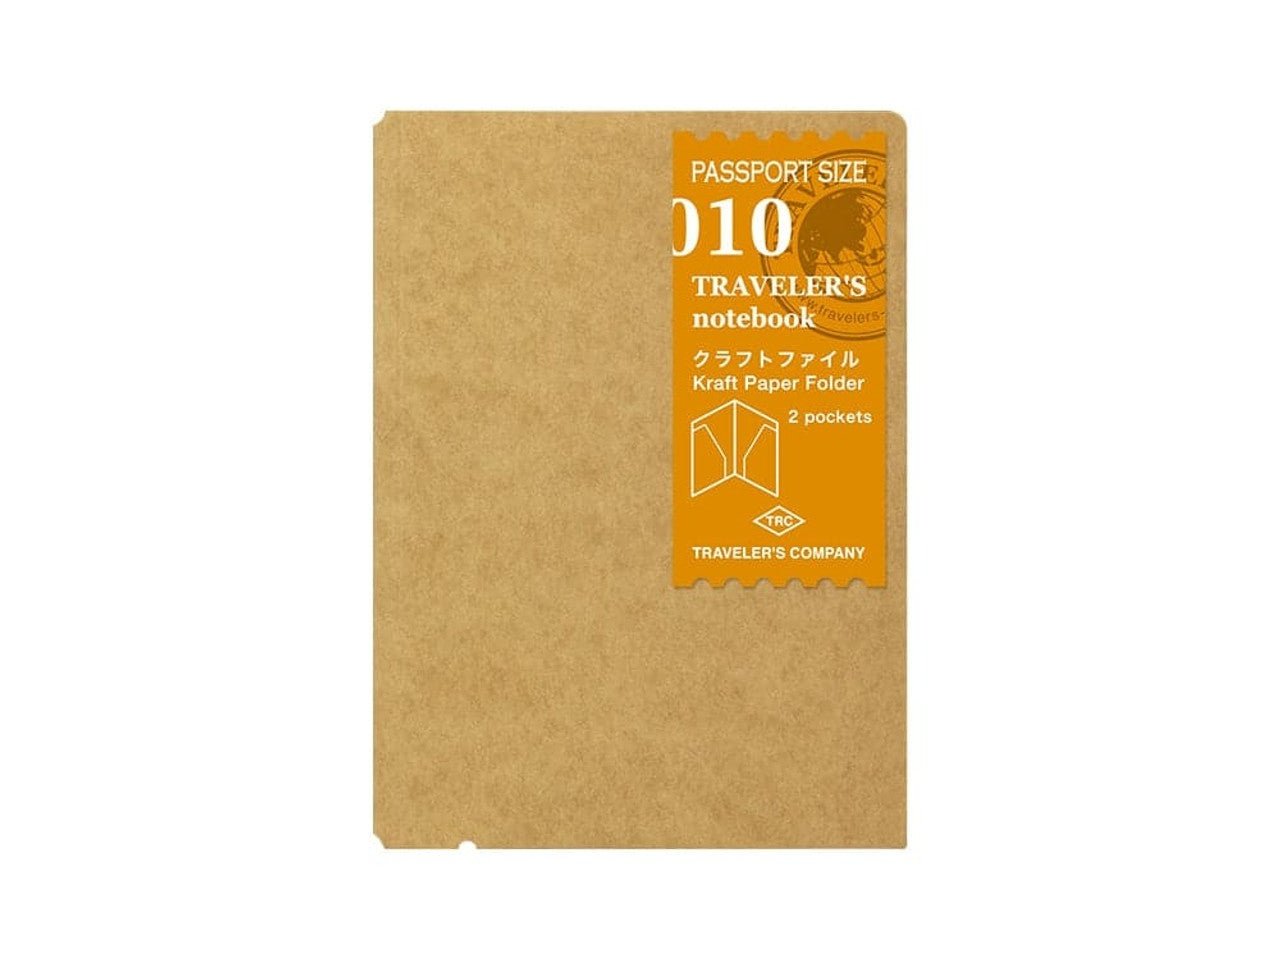 Traveler's Company Passport Notebook Refill 010 Kraft Paper Folder 2 Pockets